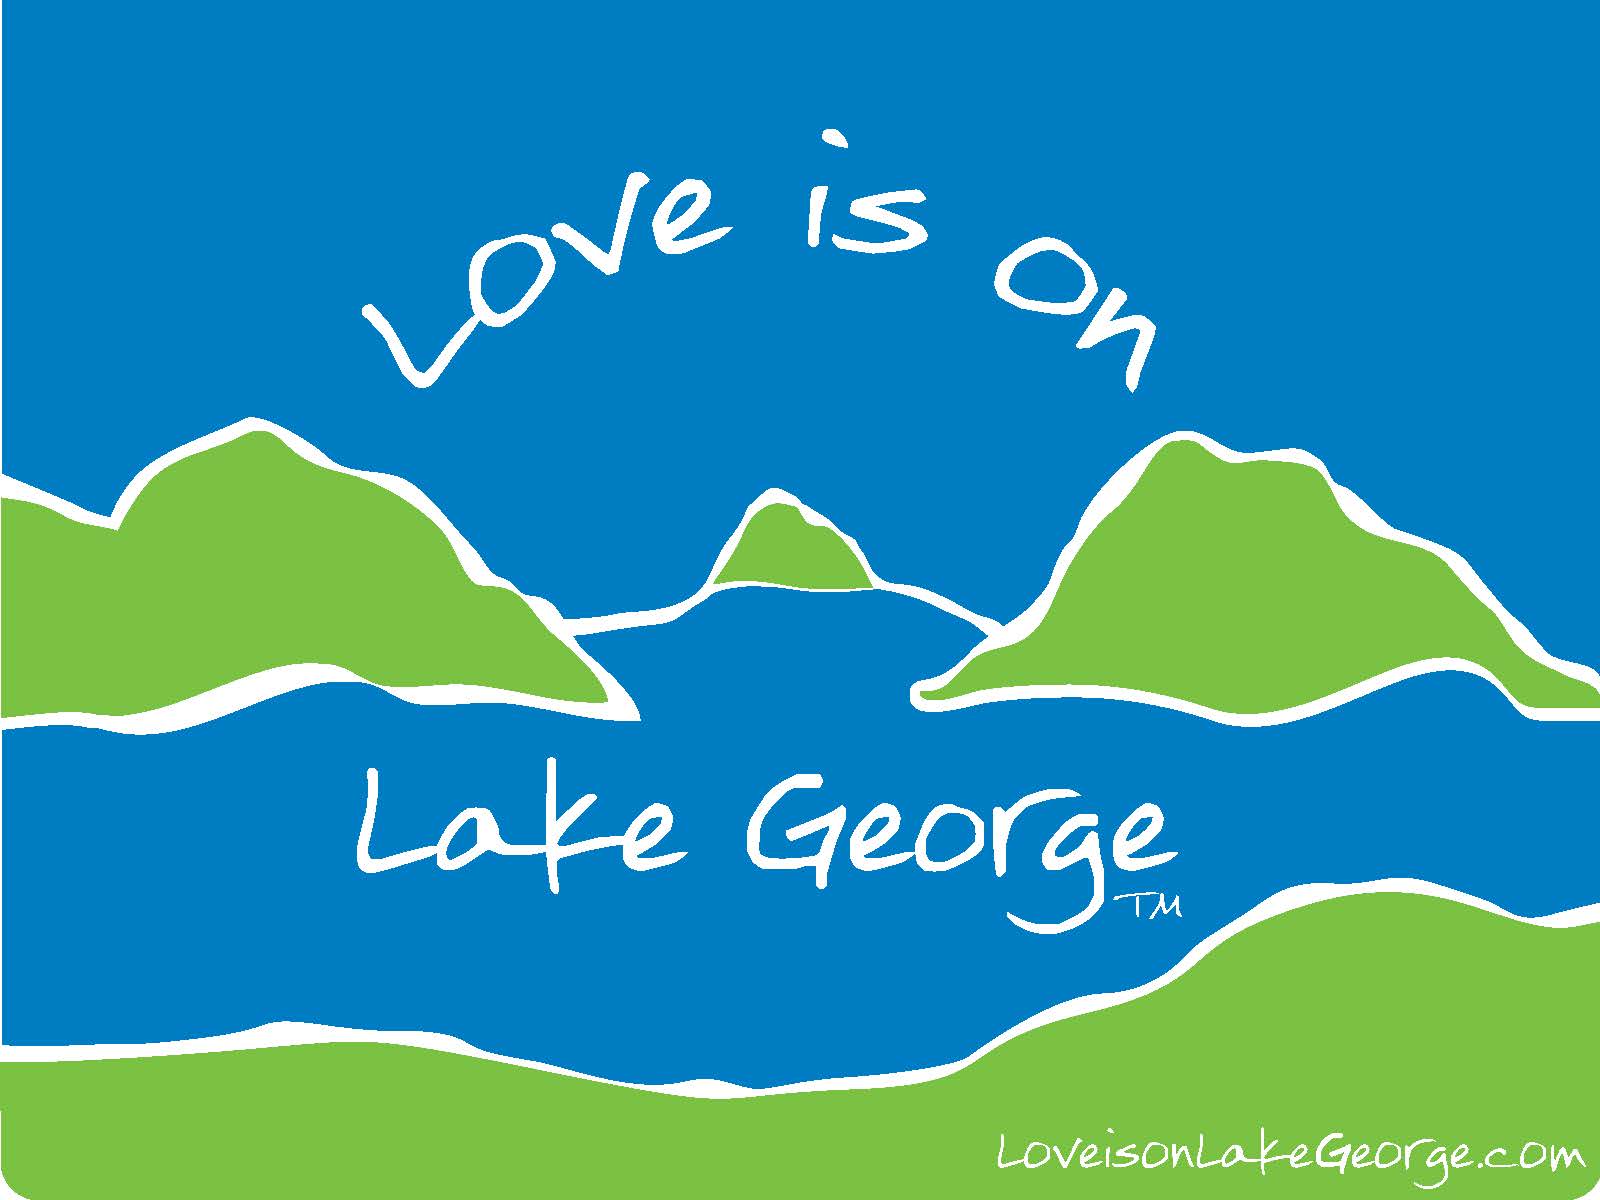 Love is on Lake George